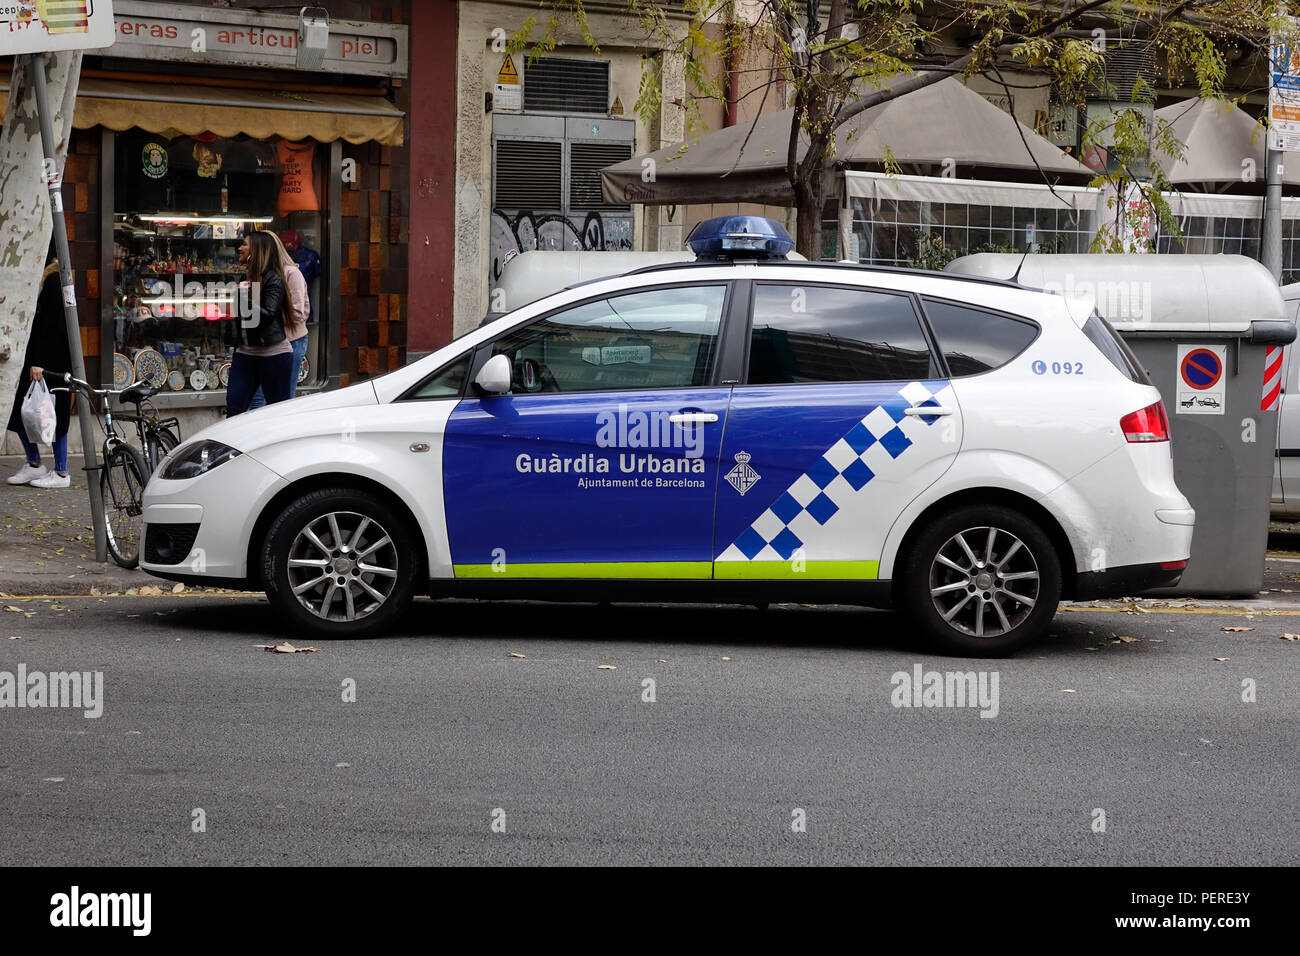 Une voiture de police de La Guardia Urbana de Barcelona une police municipale à Barcelone Espagne Banque D'Images